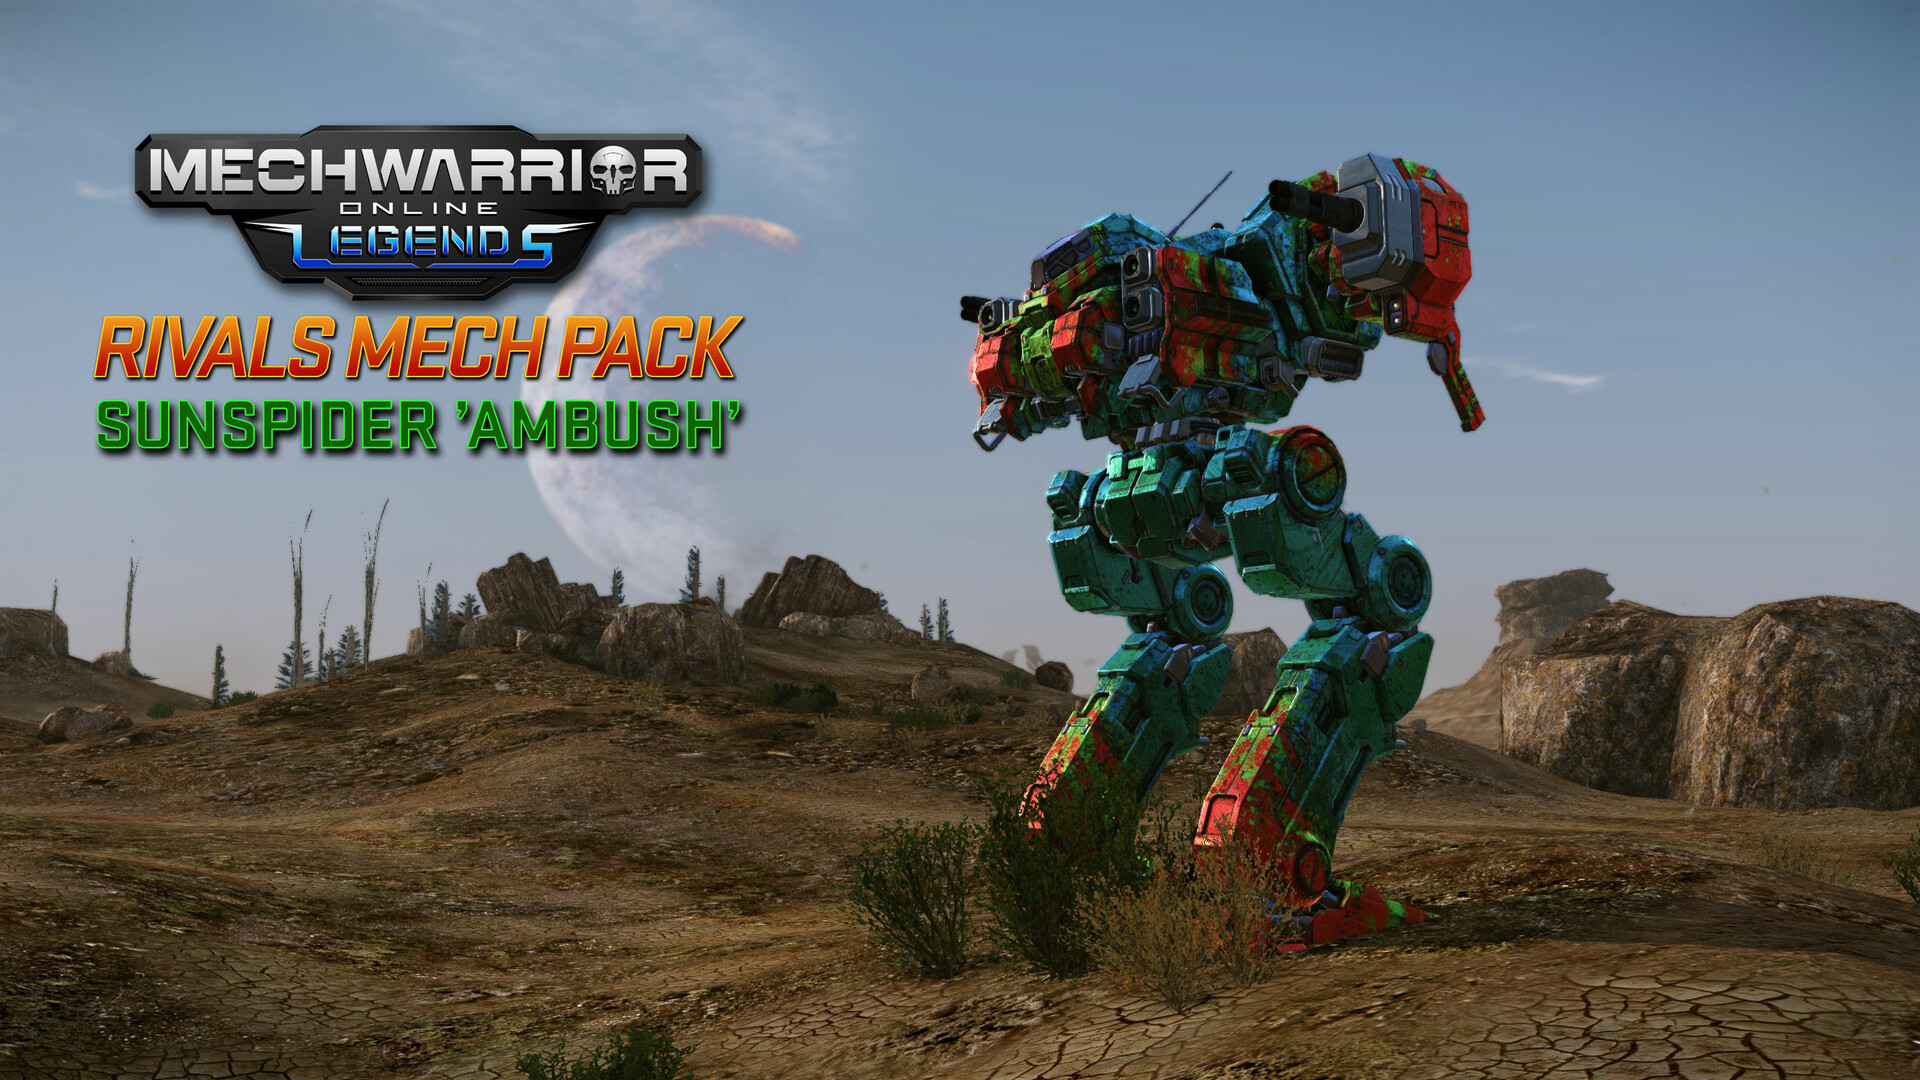 MechWarrior Online™ - Rivals Mech Pack Featured Screenshot #1